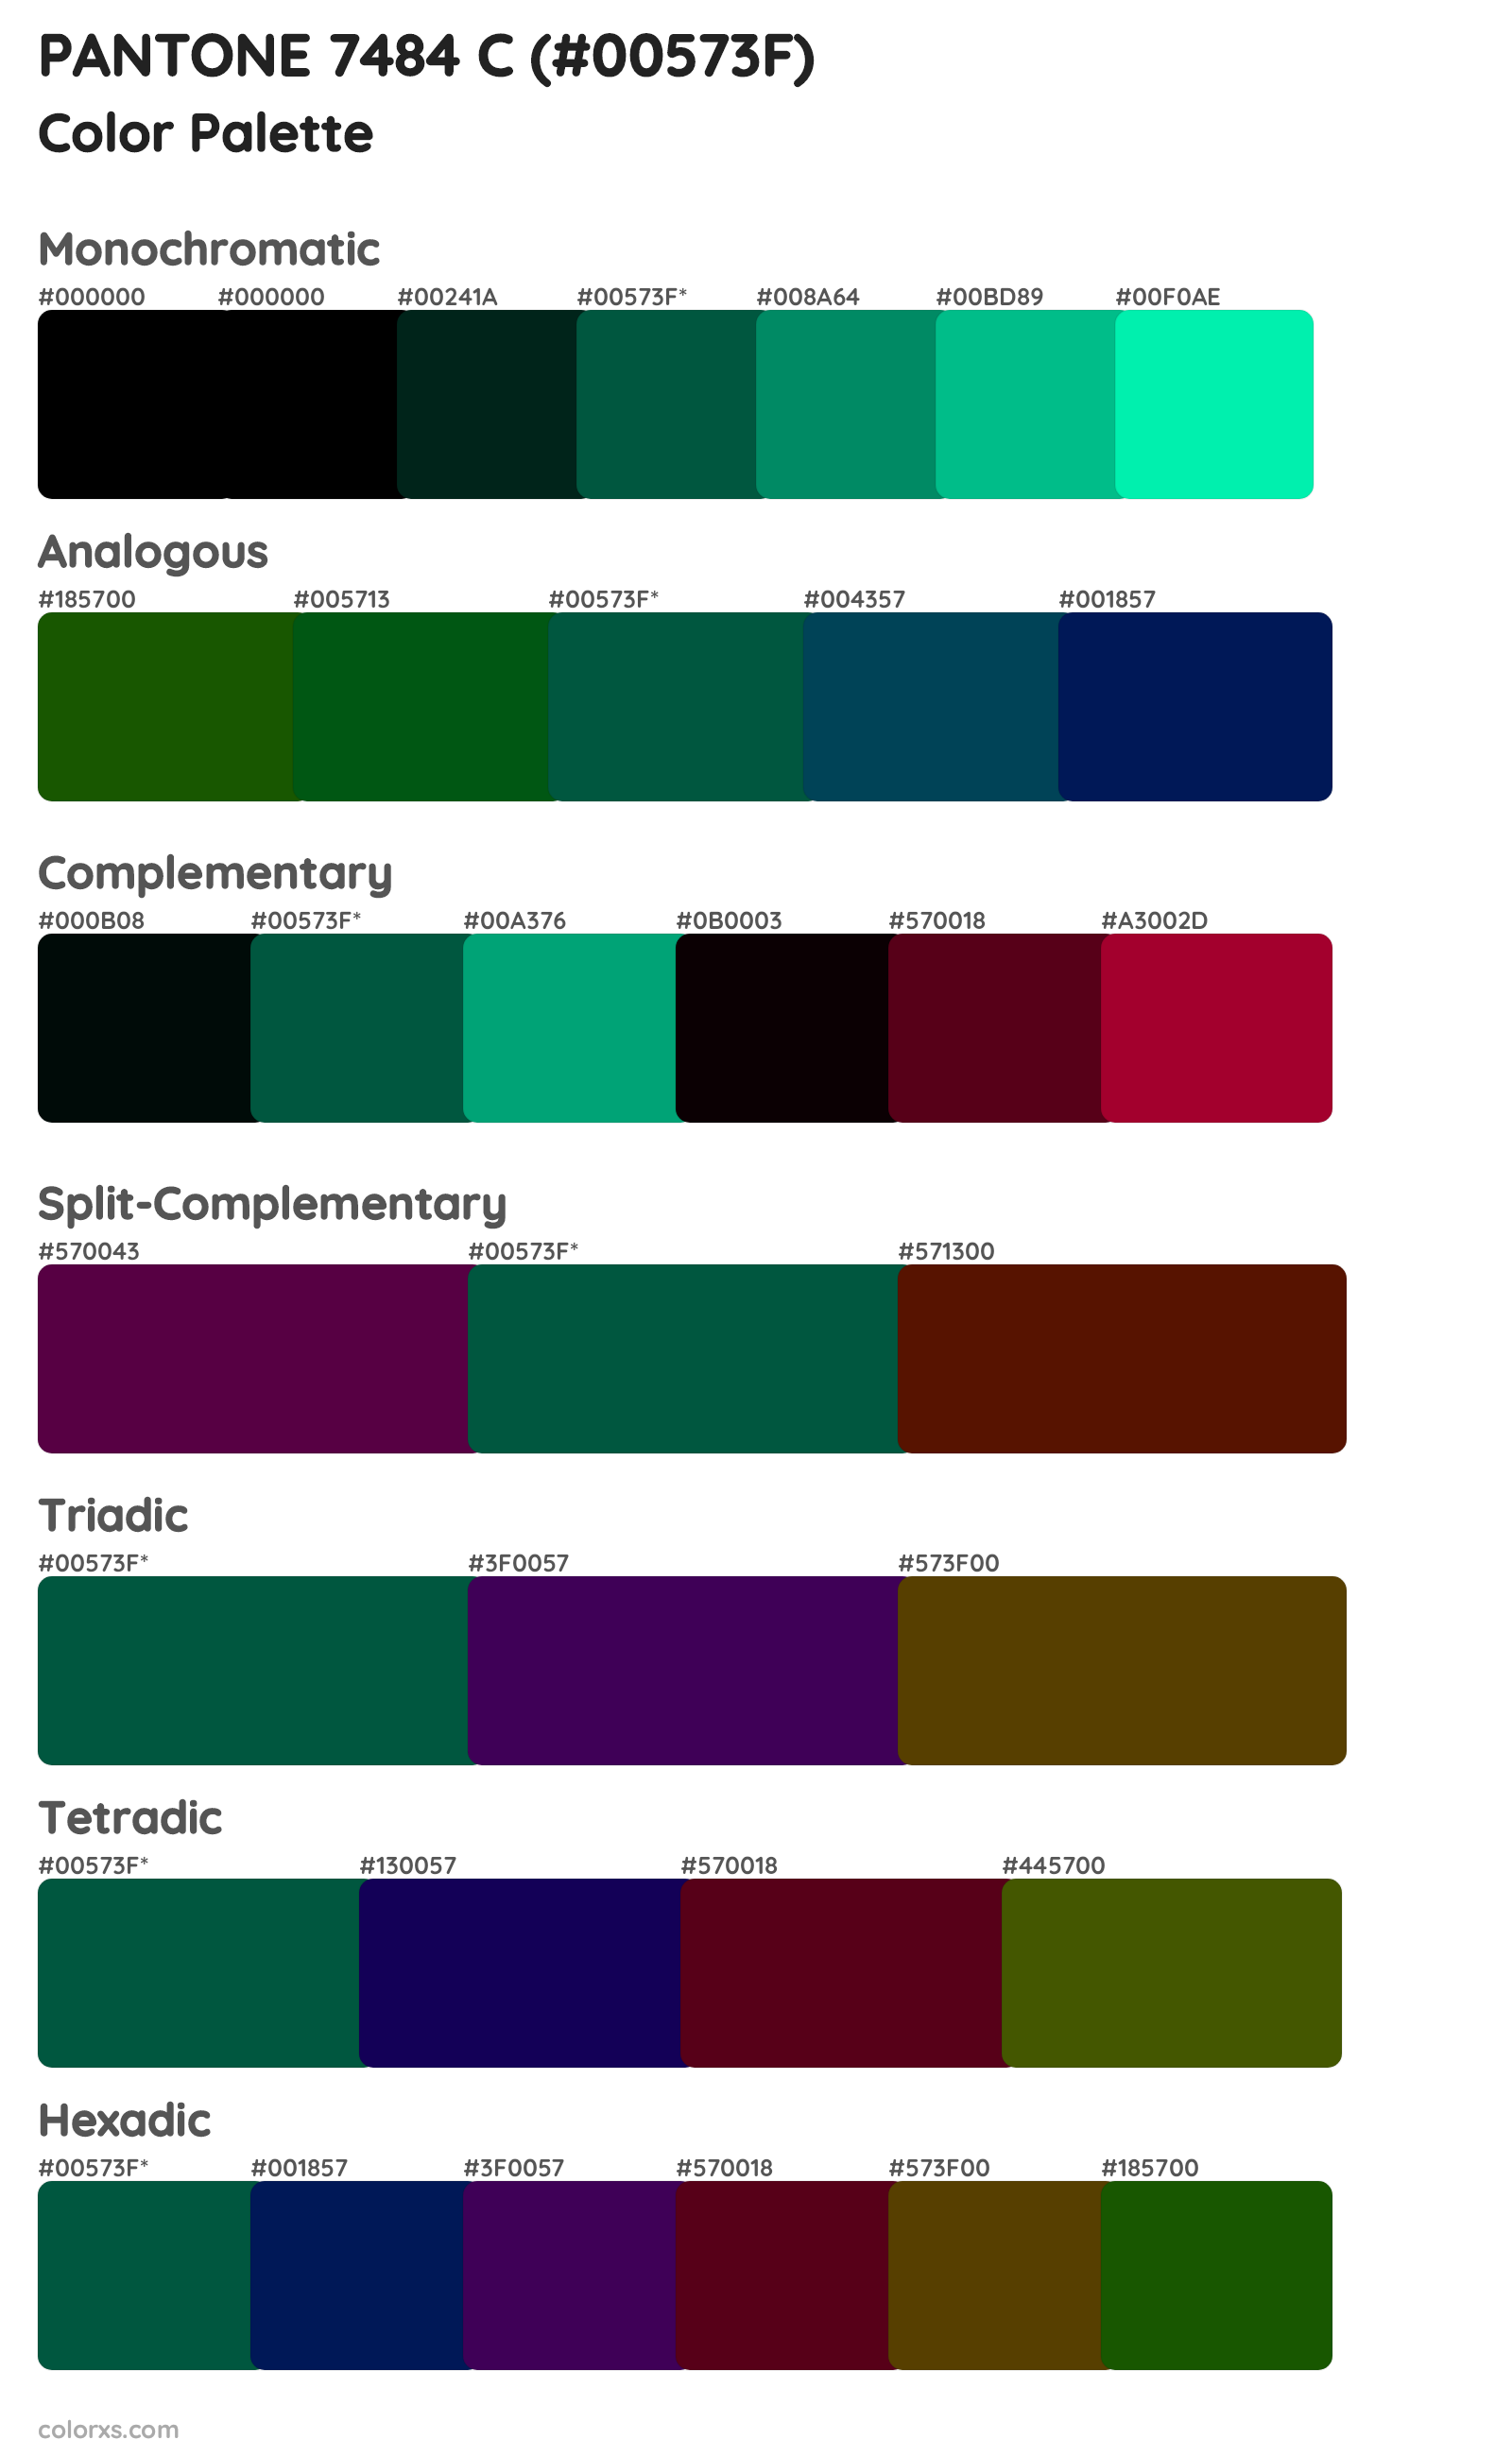 PANTONE 7484 C Color Scheme Palettes